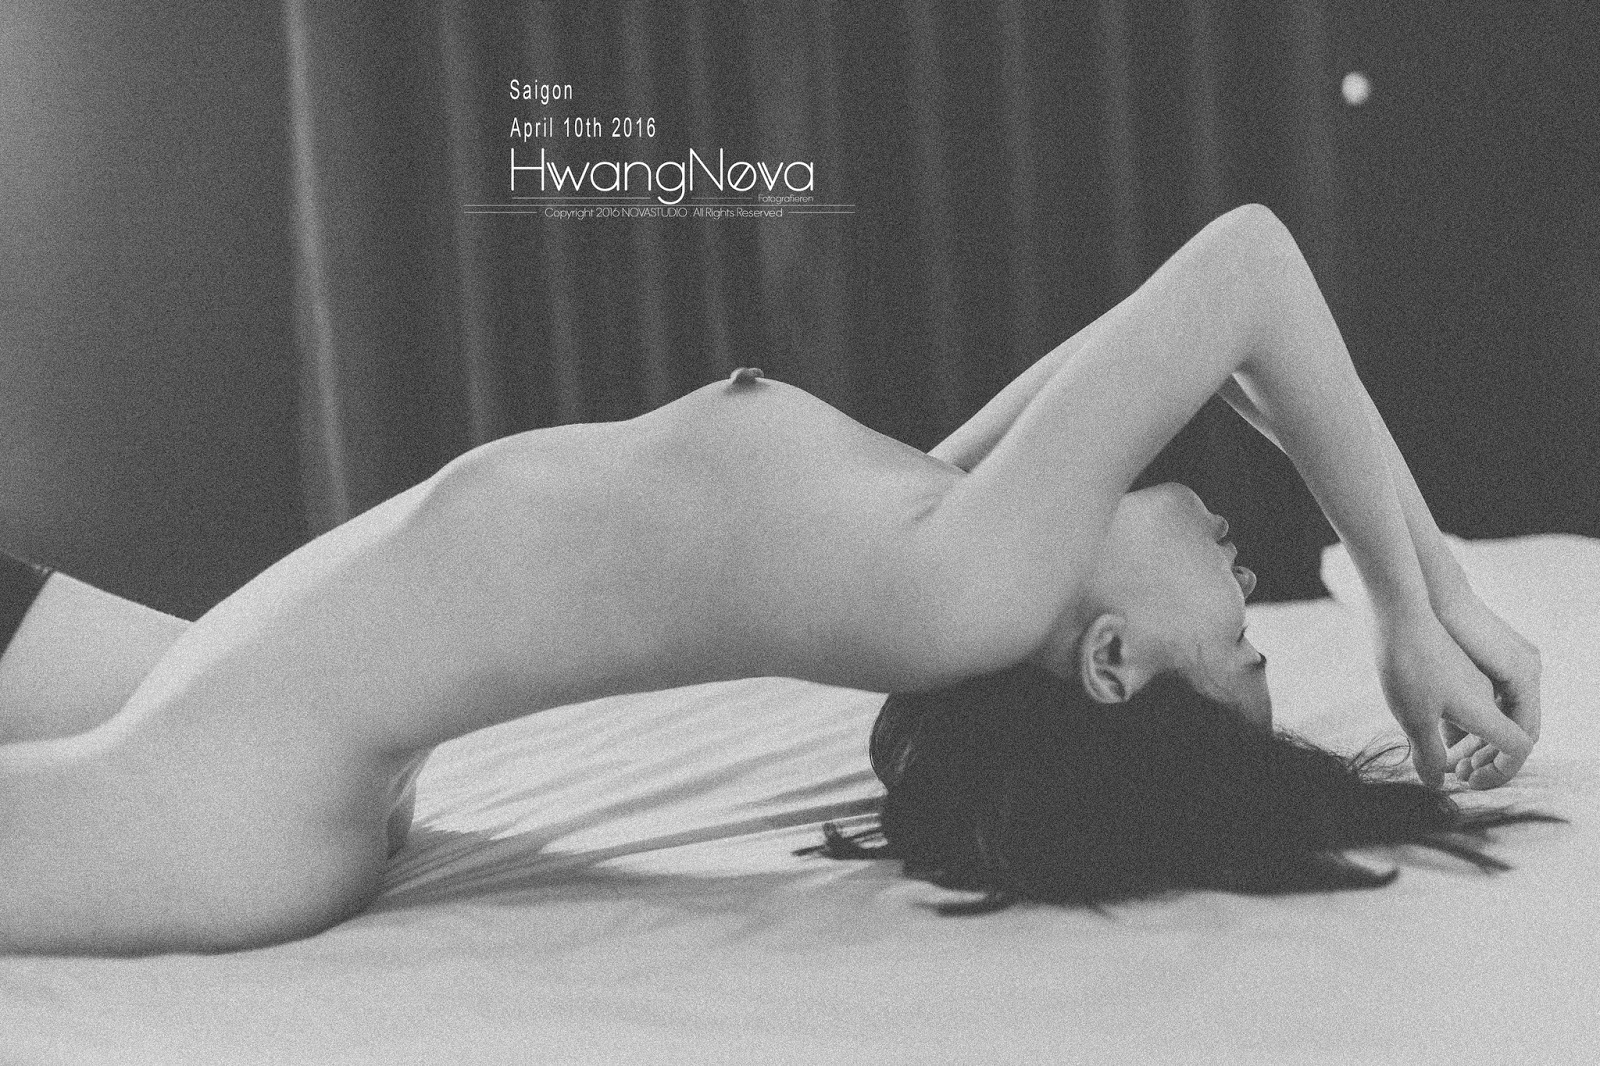 Girl xinh Viet Nam by Hwang Nova MrCong.com 172